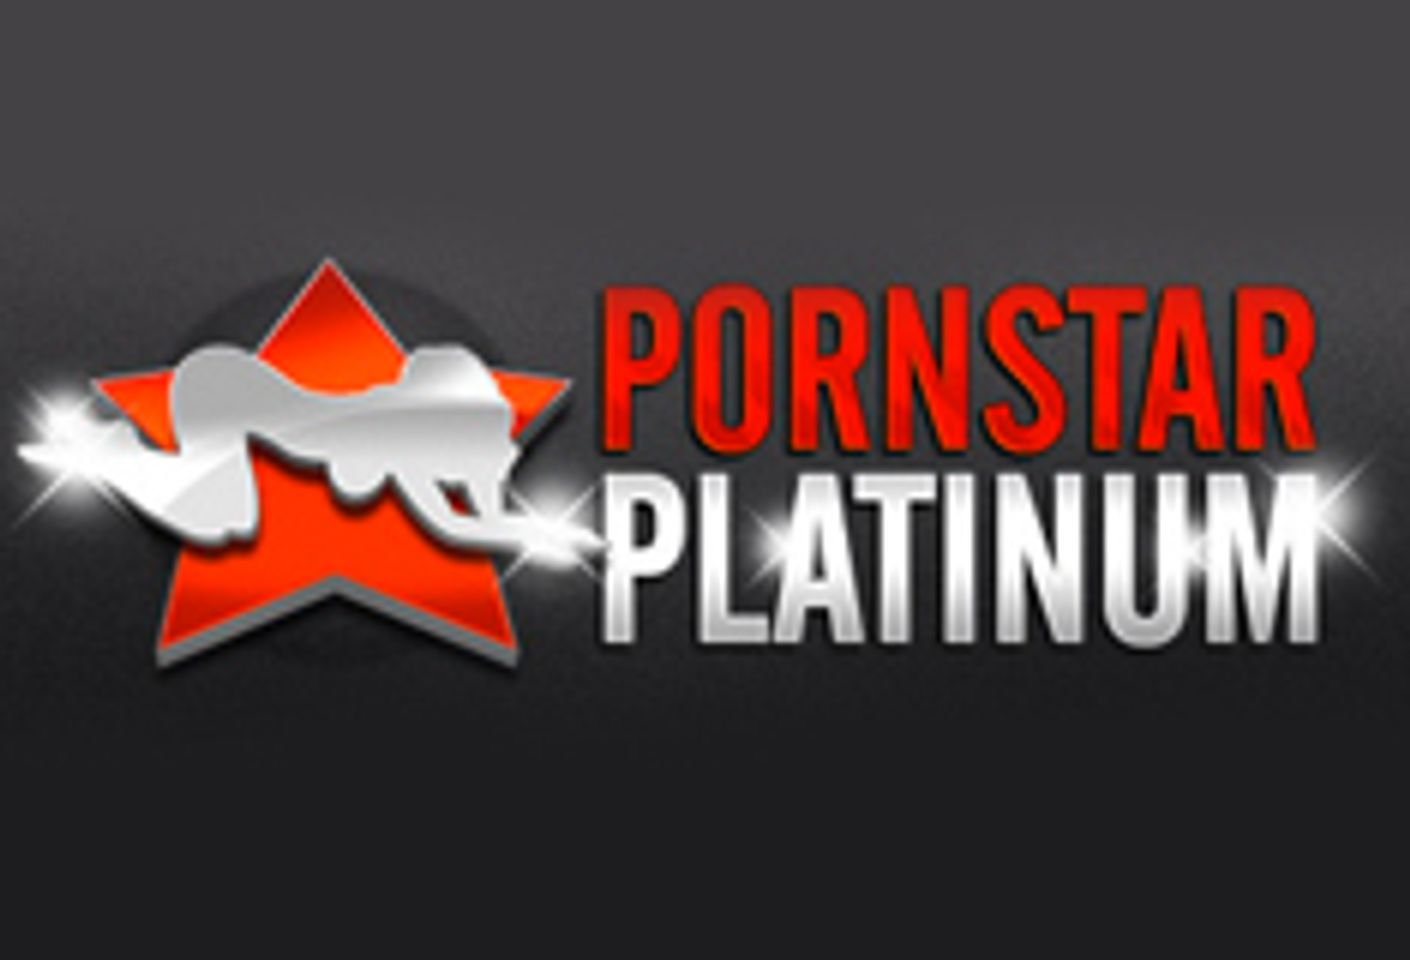 PornStarPlatinum Launches GigiRiveraXXX.com